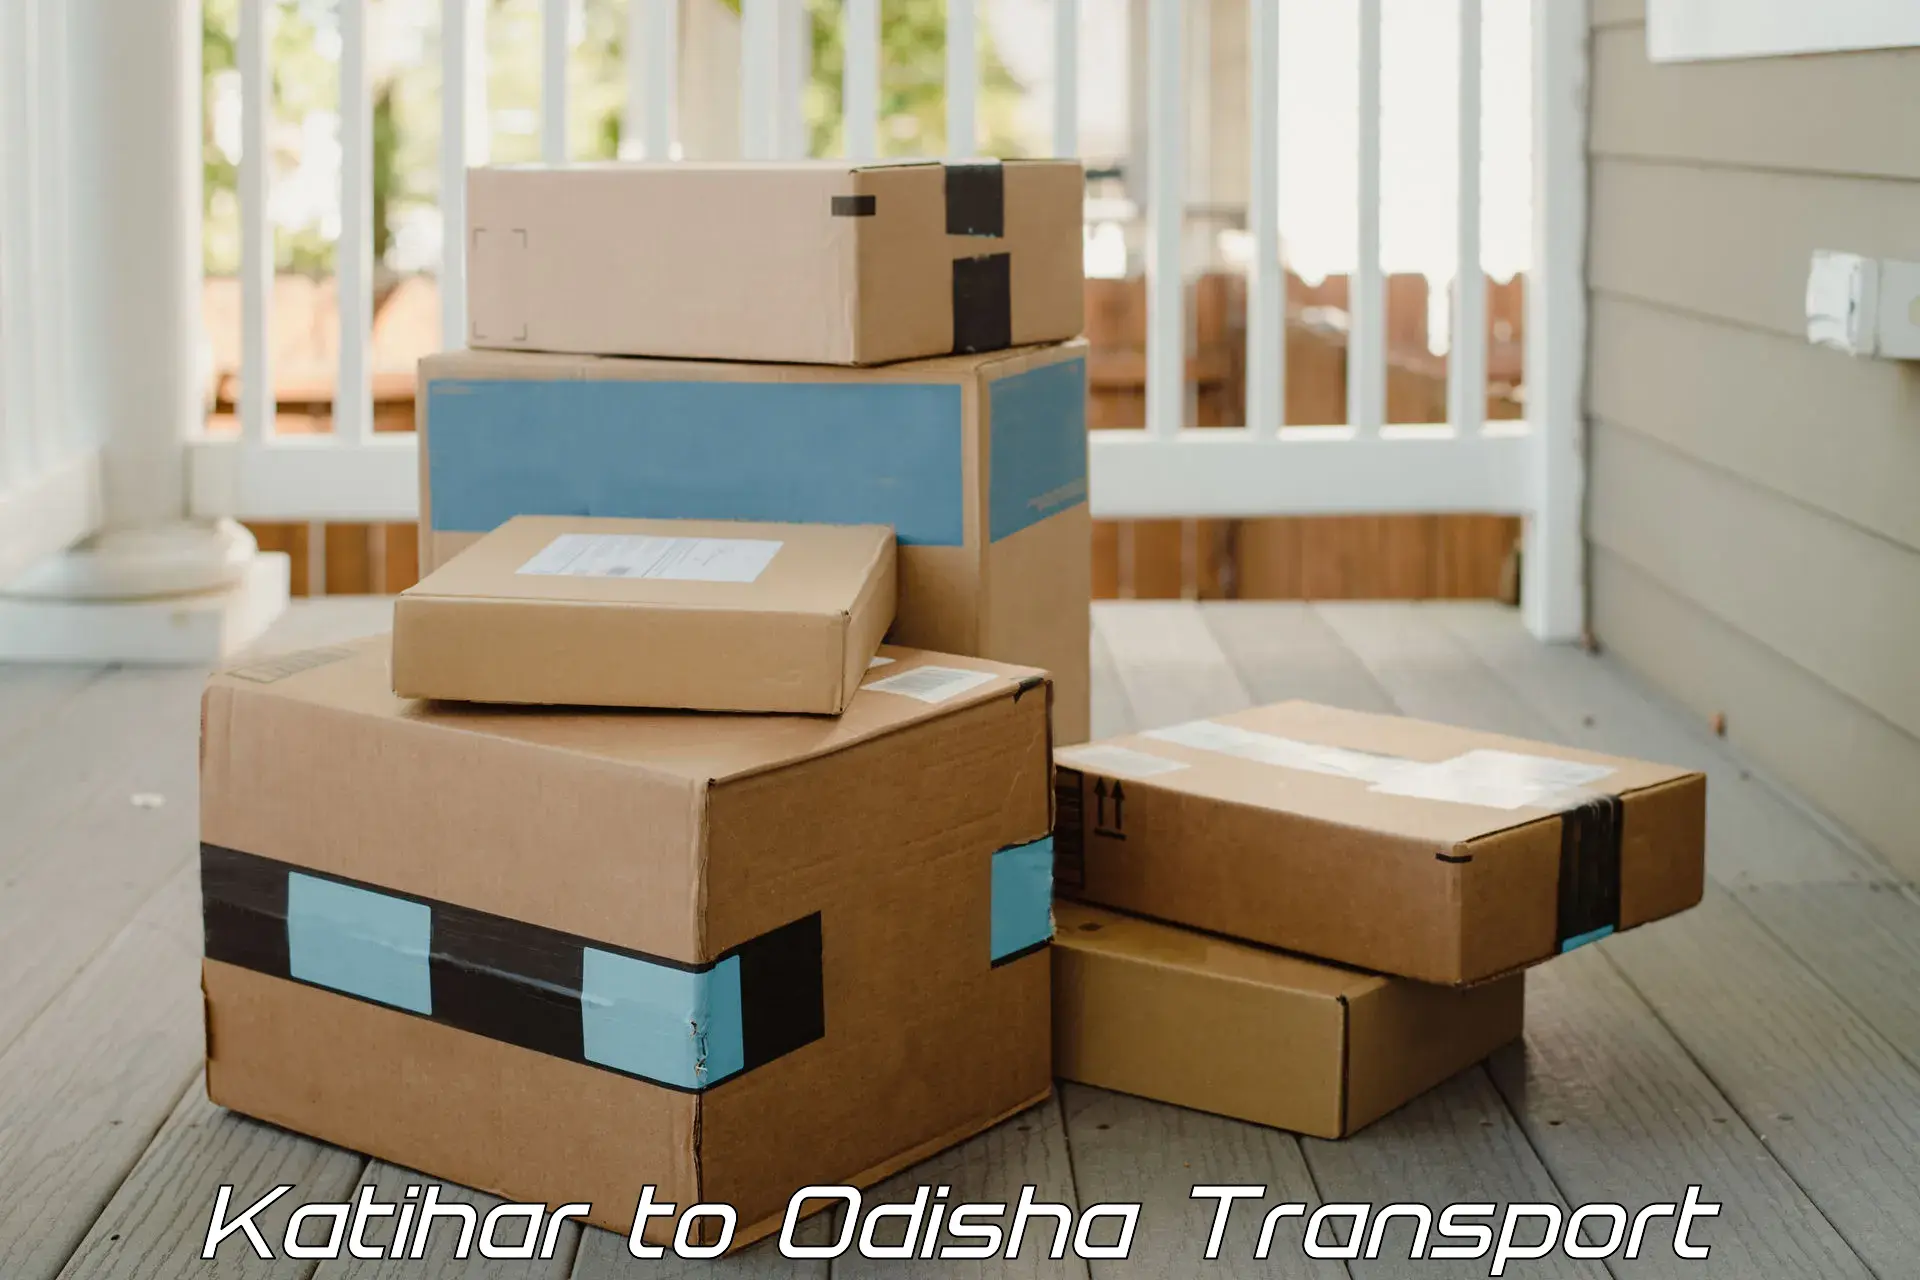 Goods delivery service in Katihar to Melchhamunda